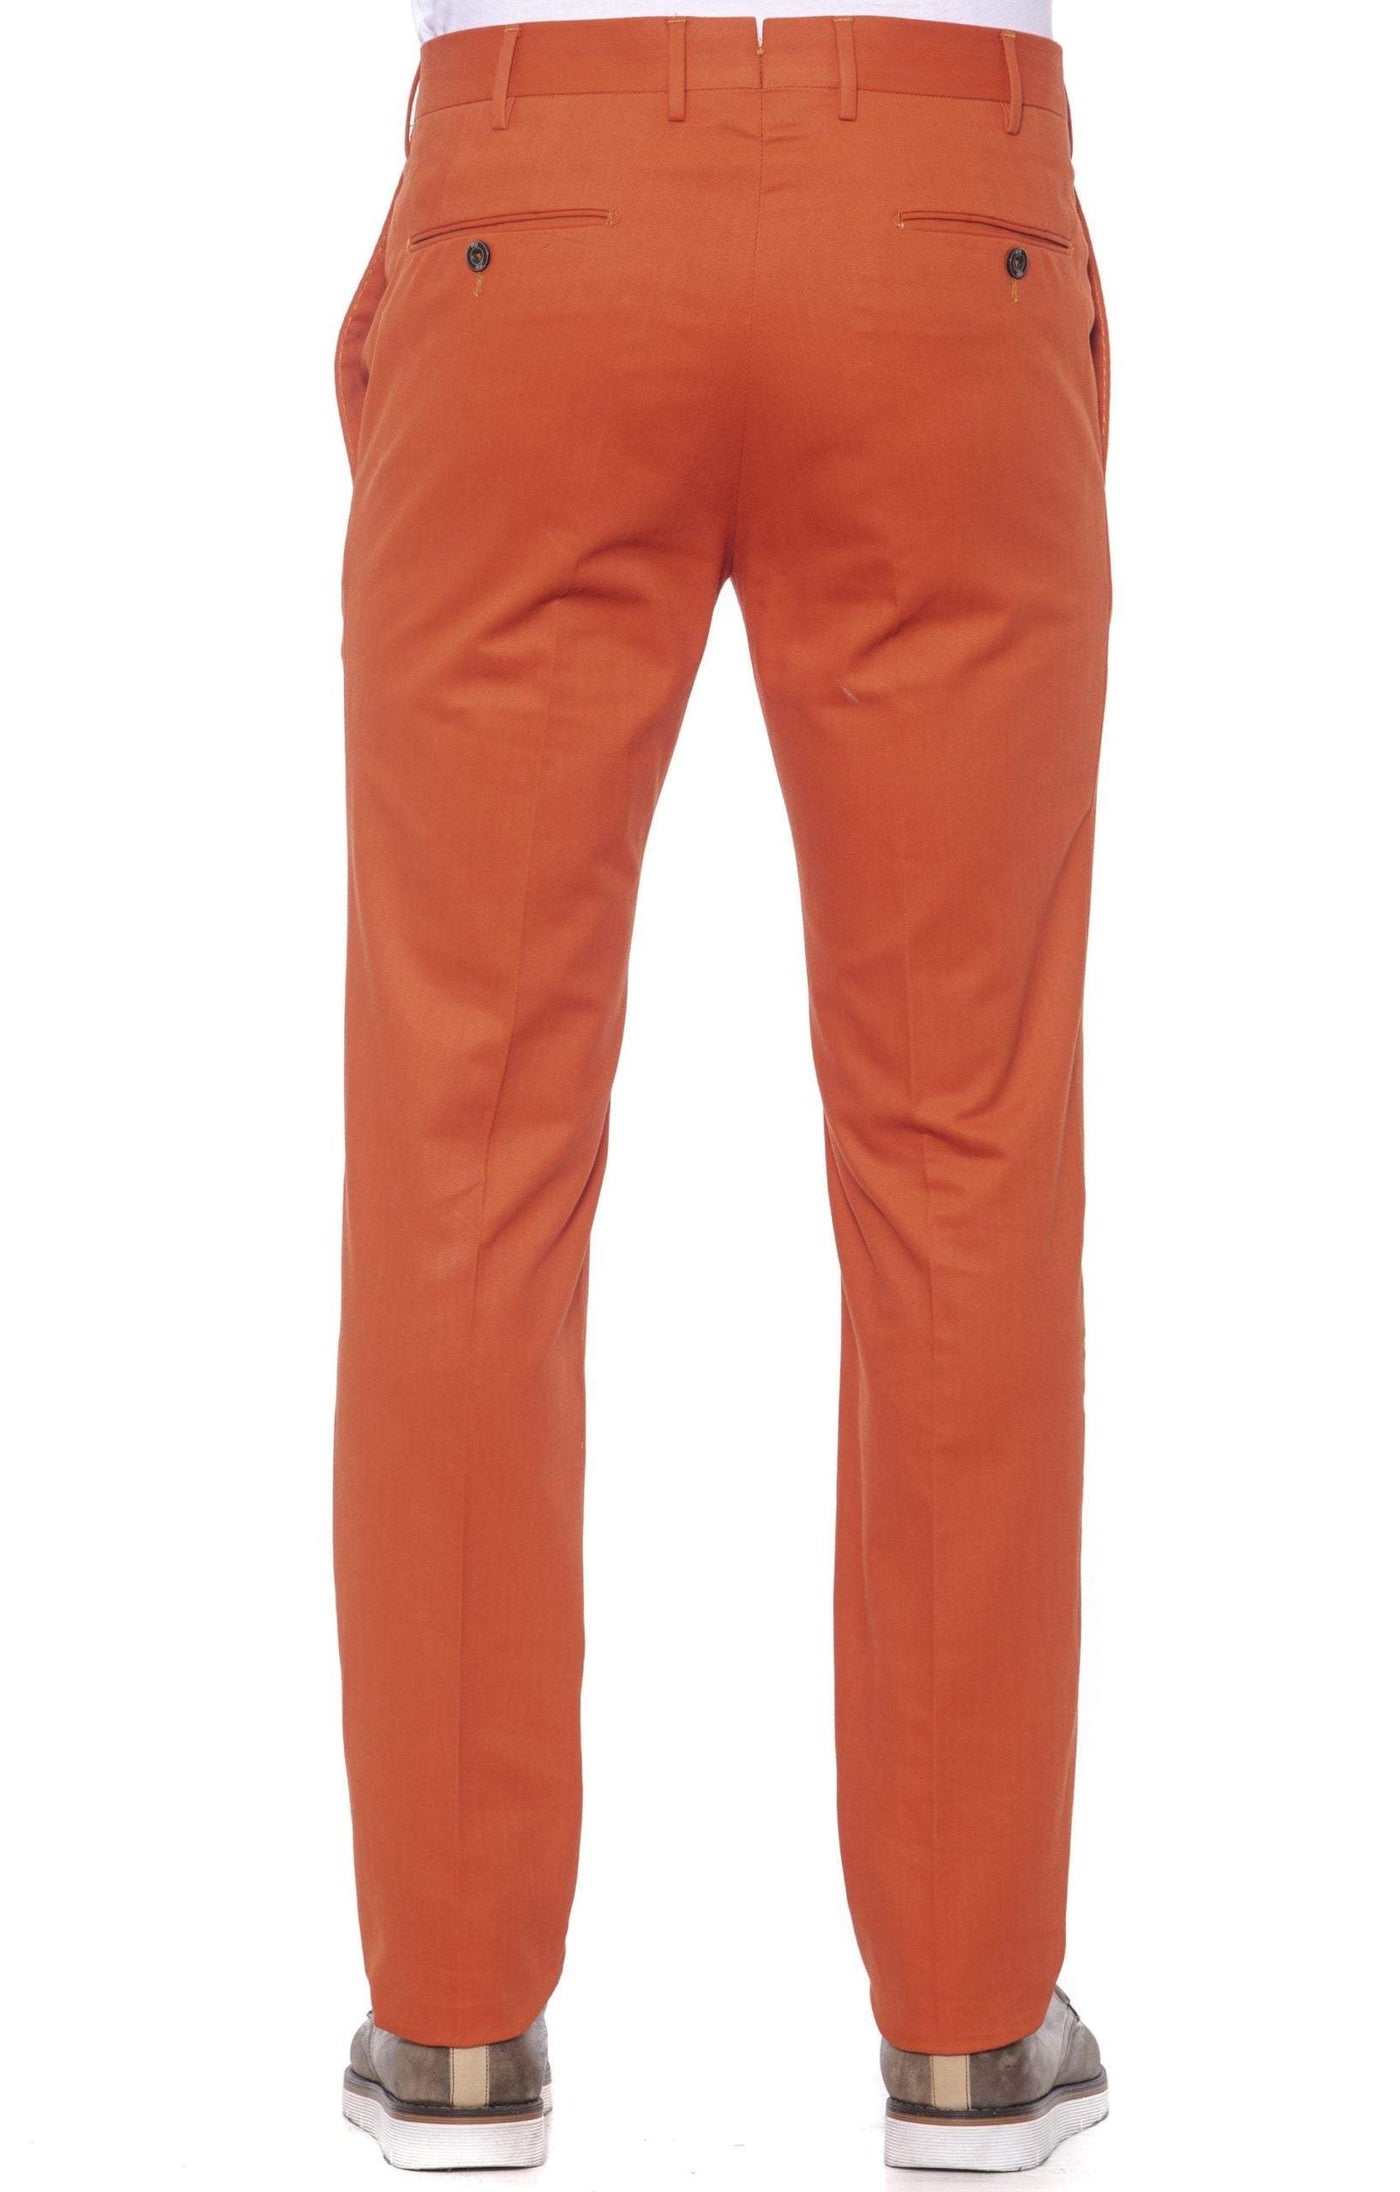 PT Torino Red Cotton Jeans & Pant #men, feed-1, IT48 | M, IT50 | L, IT52 | L, IT54 | XL, IT56 | XXL, Jeans & Pants - Men - Clothing, PT Torino, Red at SEYMAYKA